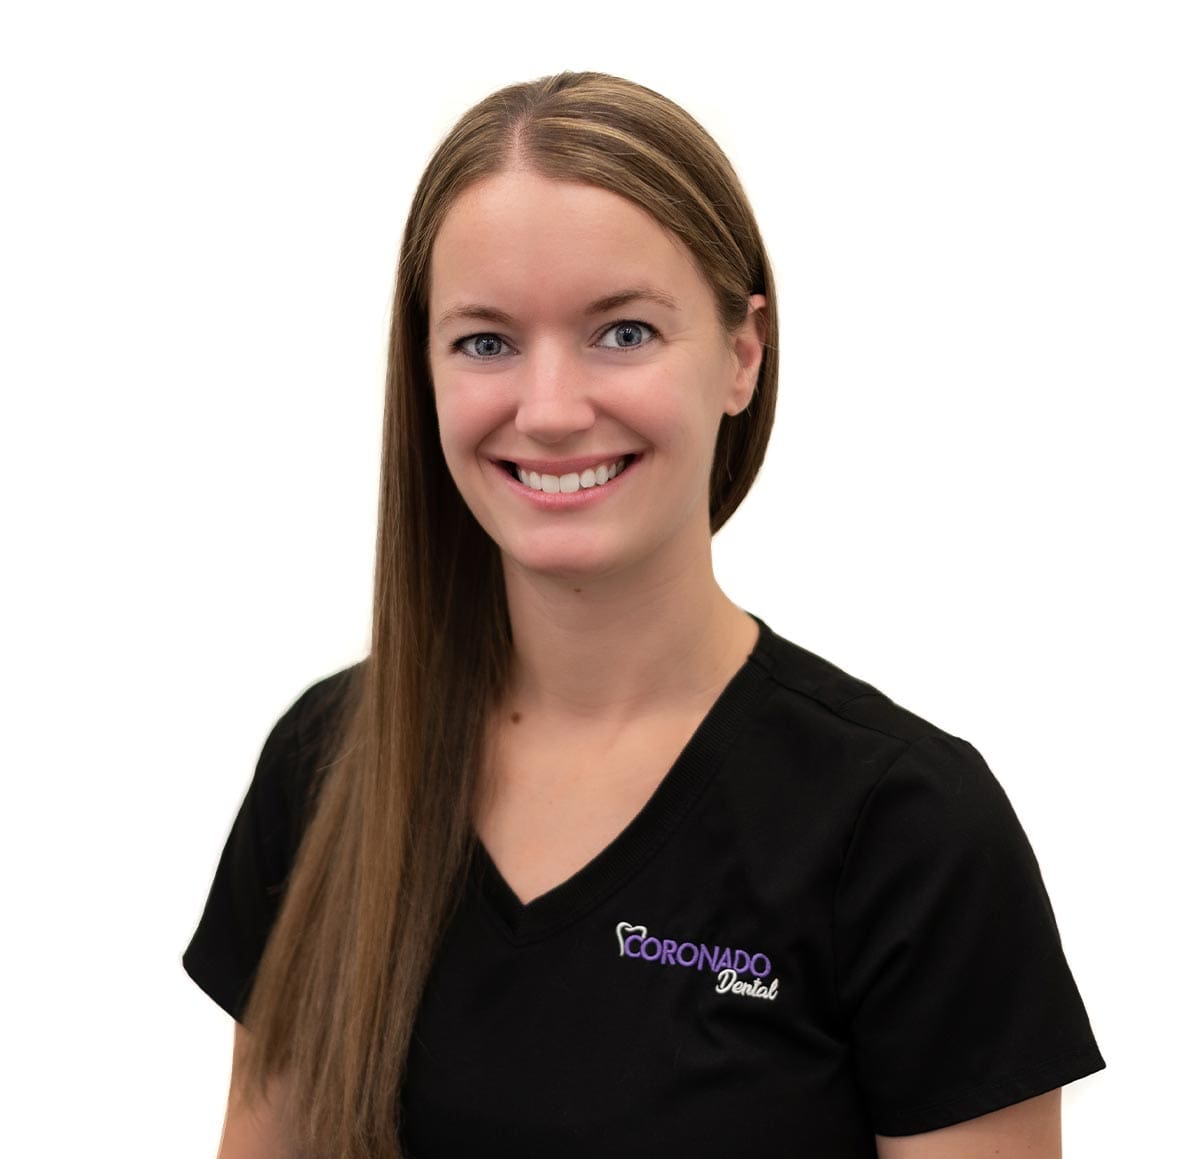 Coronado Dental Personalized dental care for senior living resident team Amber Steinfadt image - Meet the Team